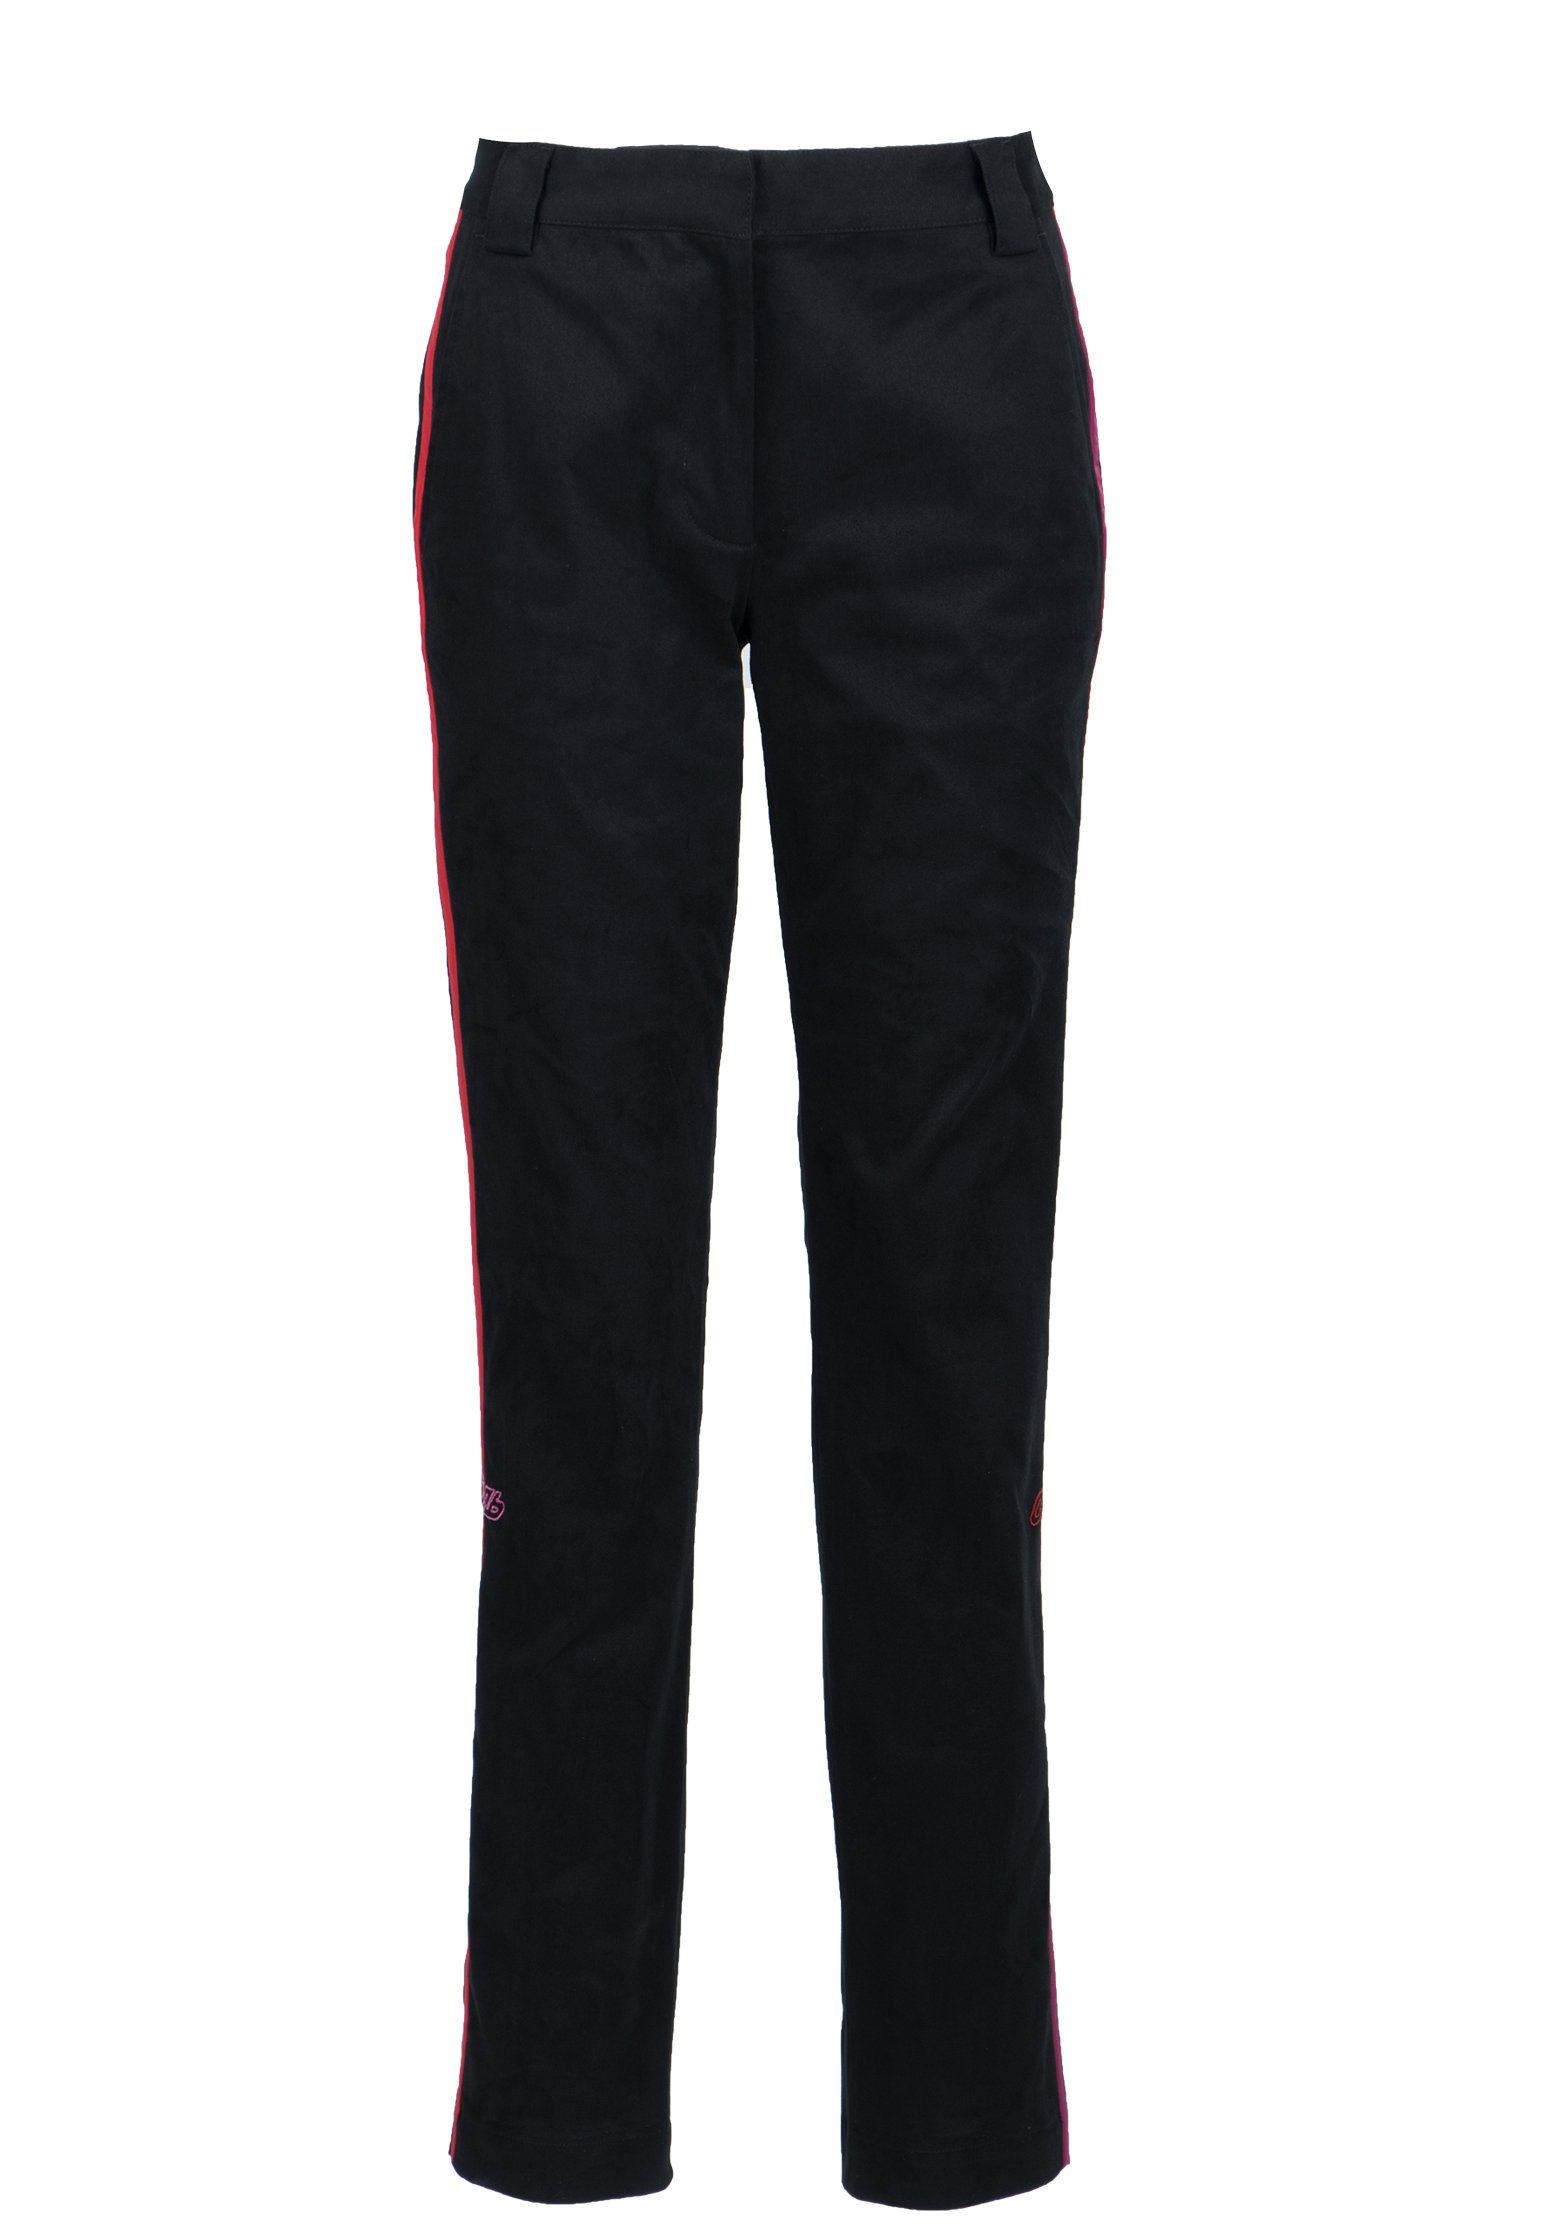 Спортивные брюки женские HERON PRESTON 105189 черные S